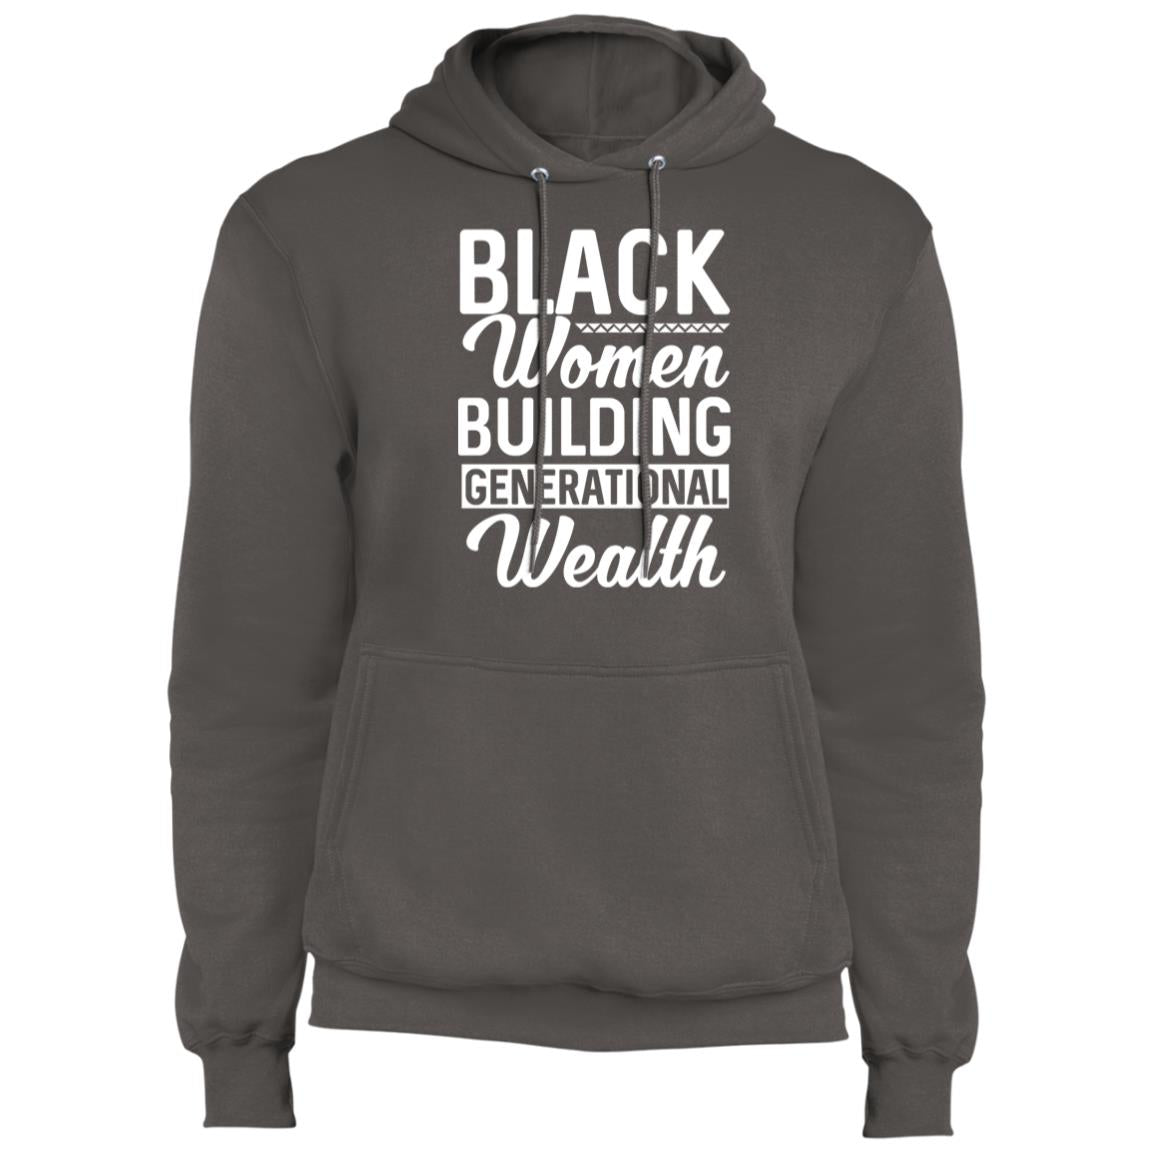 Black Women Building Generational Wealth - Fleece Pullover Hoodie